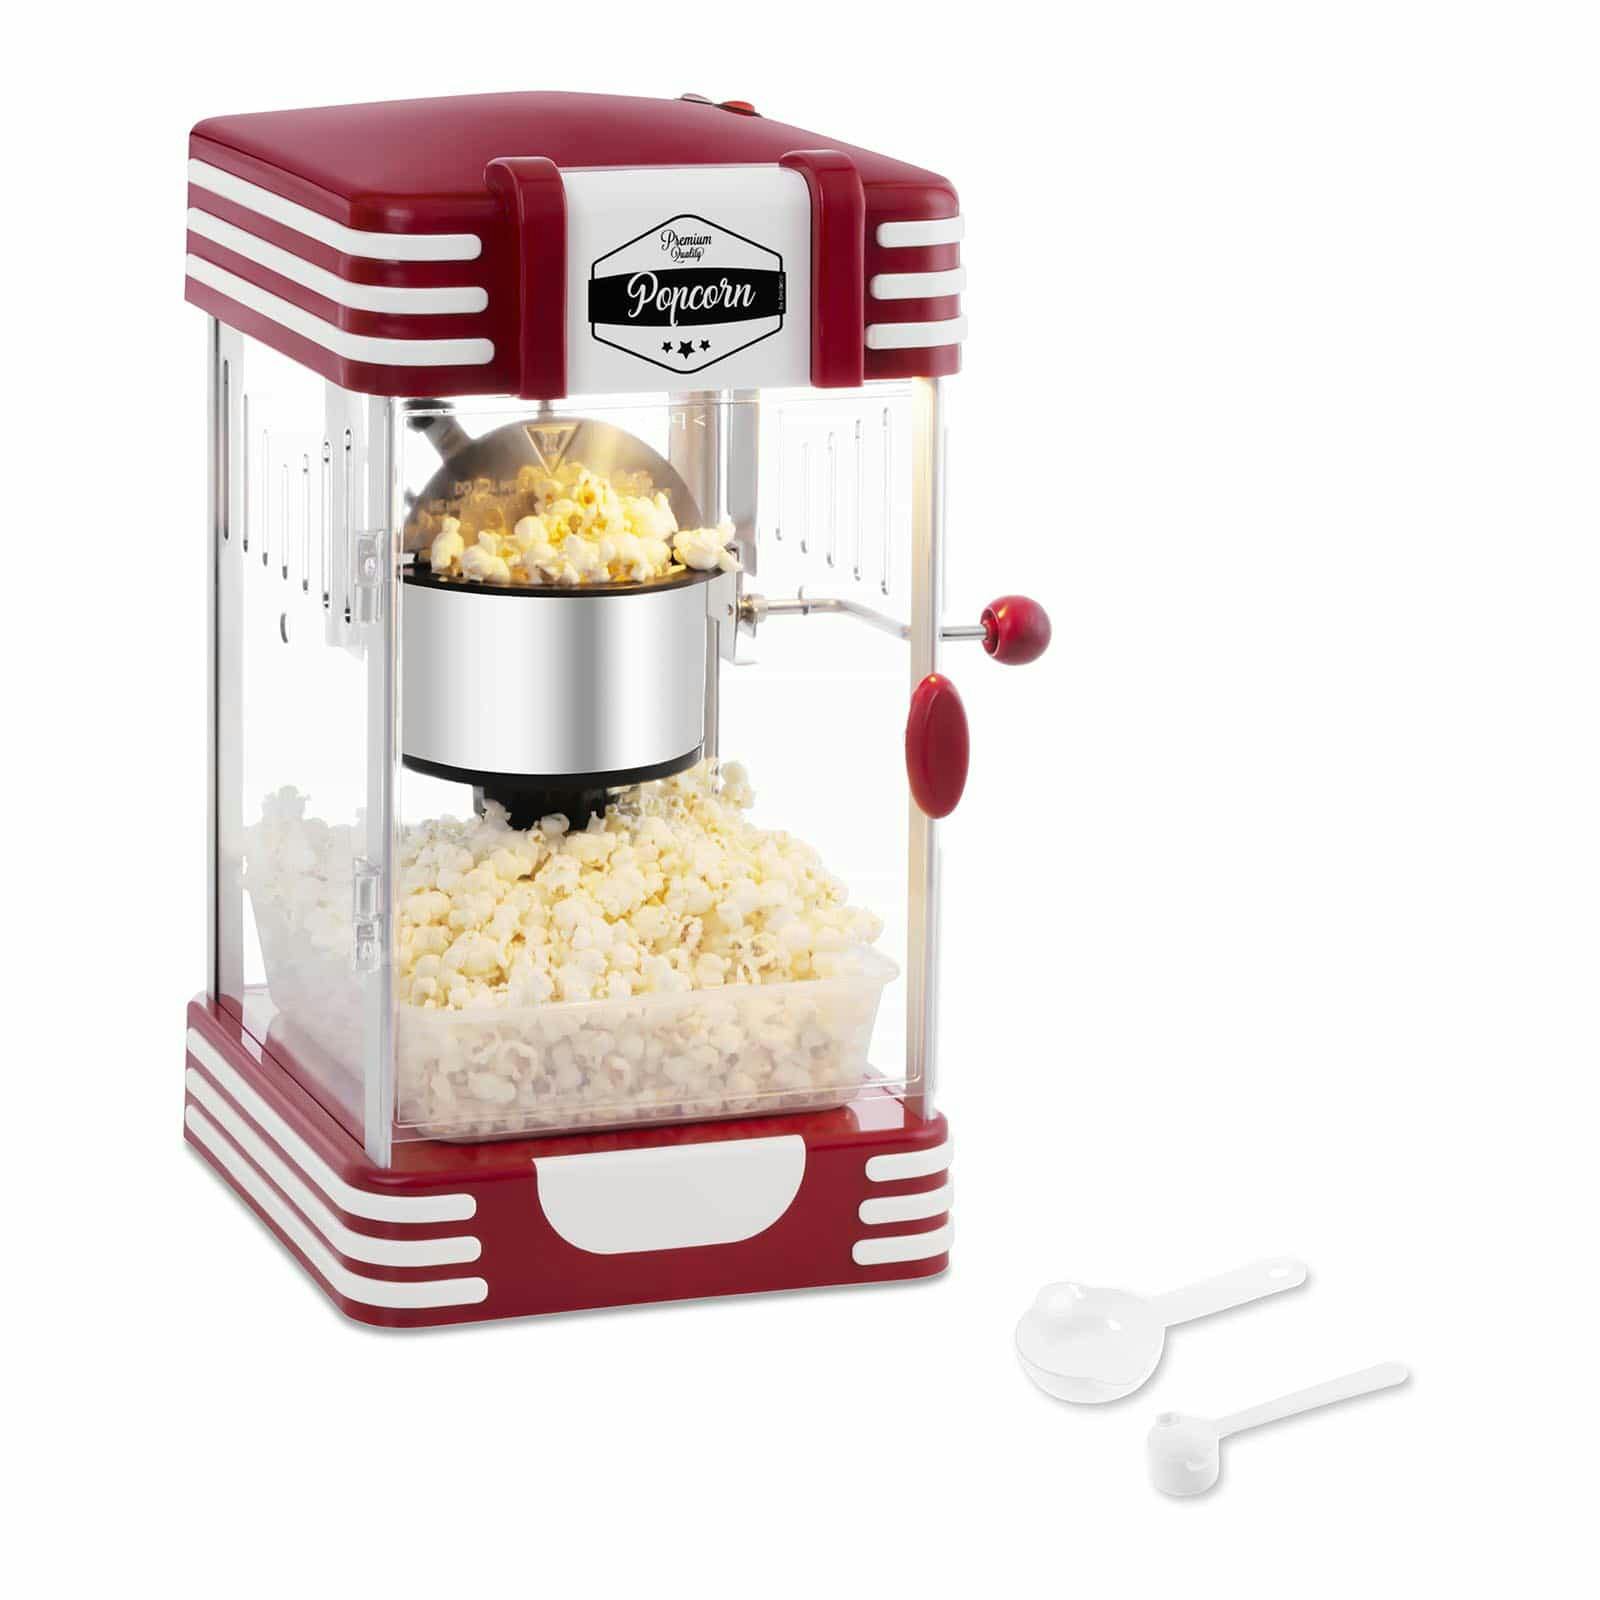 Аппарат для попкорна купить. Аппарат для приготовления попкорна (попкорн мейкер) ретро. Машина для попкорна Popcorn maker. Попкорница Ocie красная. Аппарат для попкорна Ariete 2957/01 голубой.